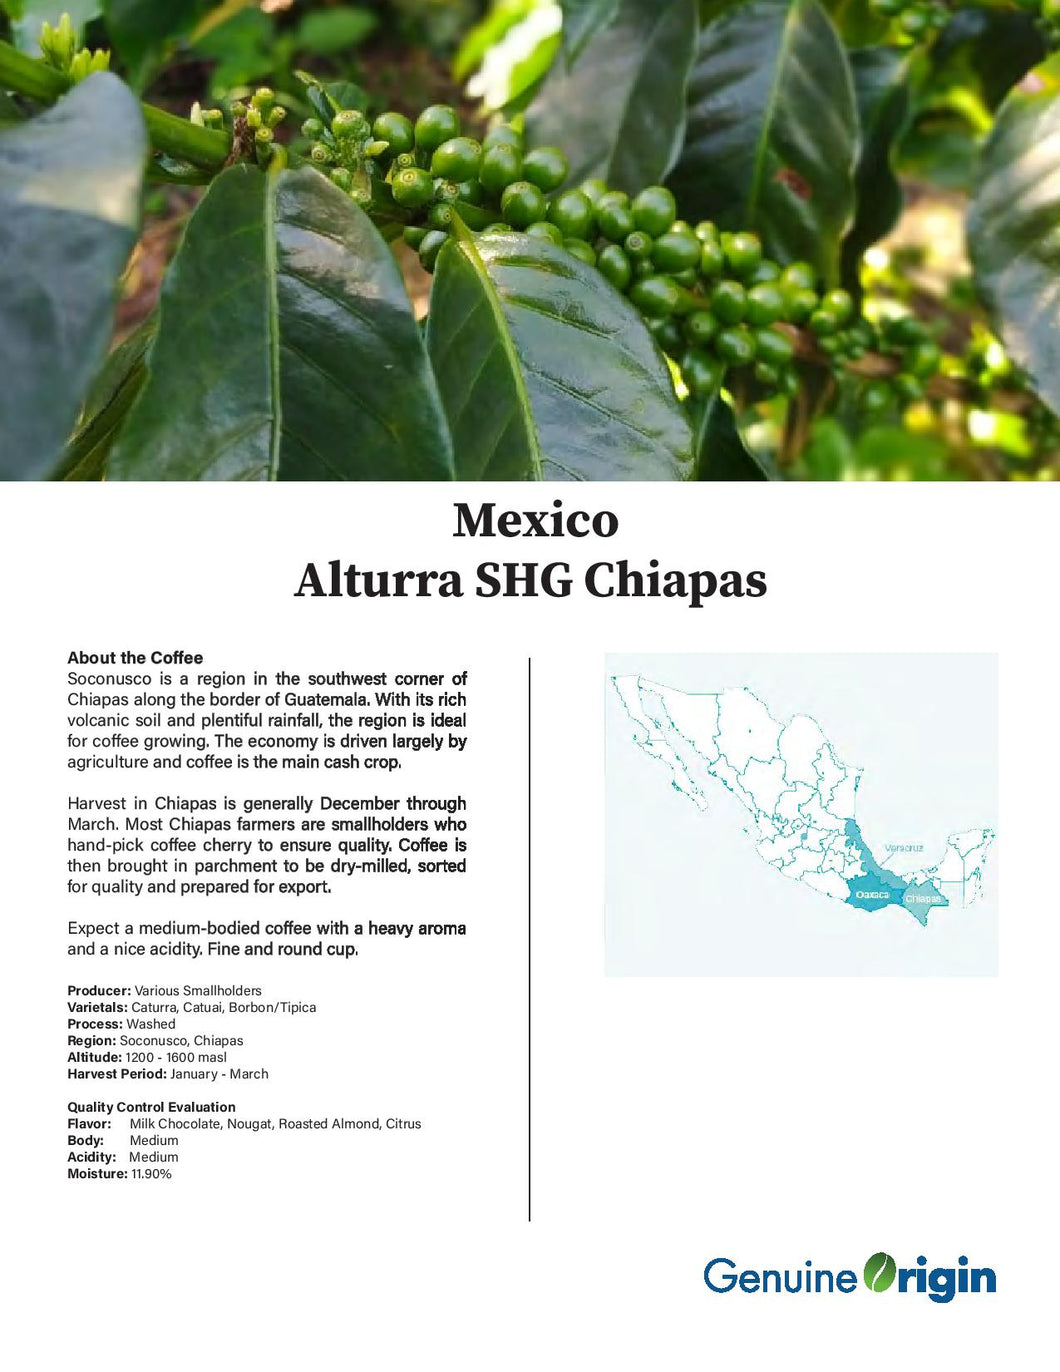 Mexico Chiapas